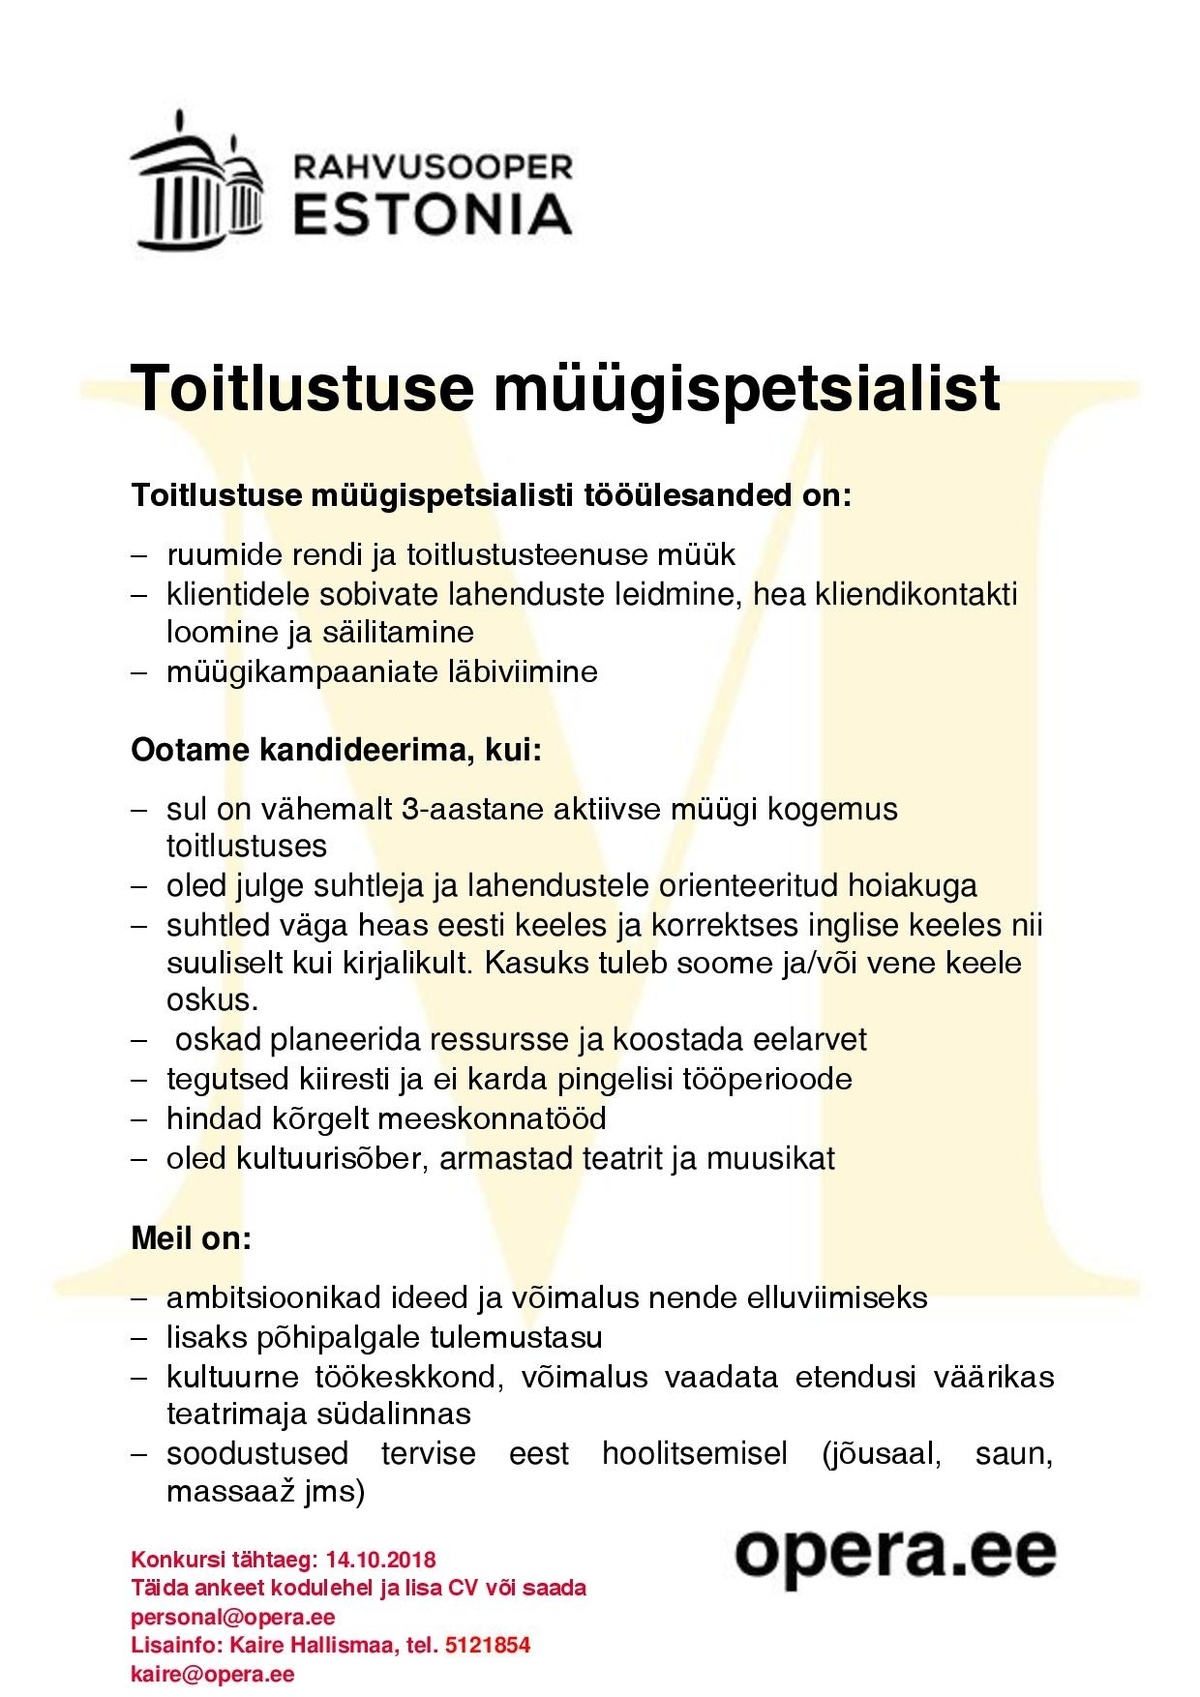 Rahvusooper Estonia Toitlustuse müügispetsialist